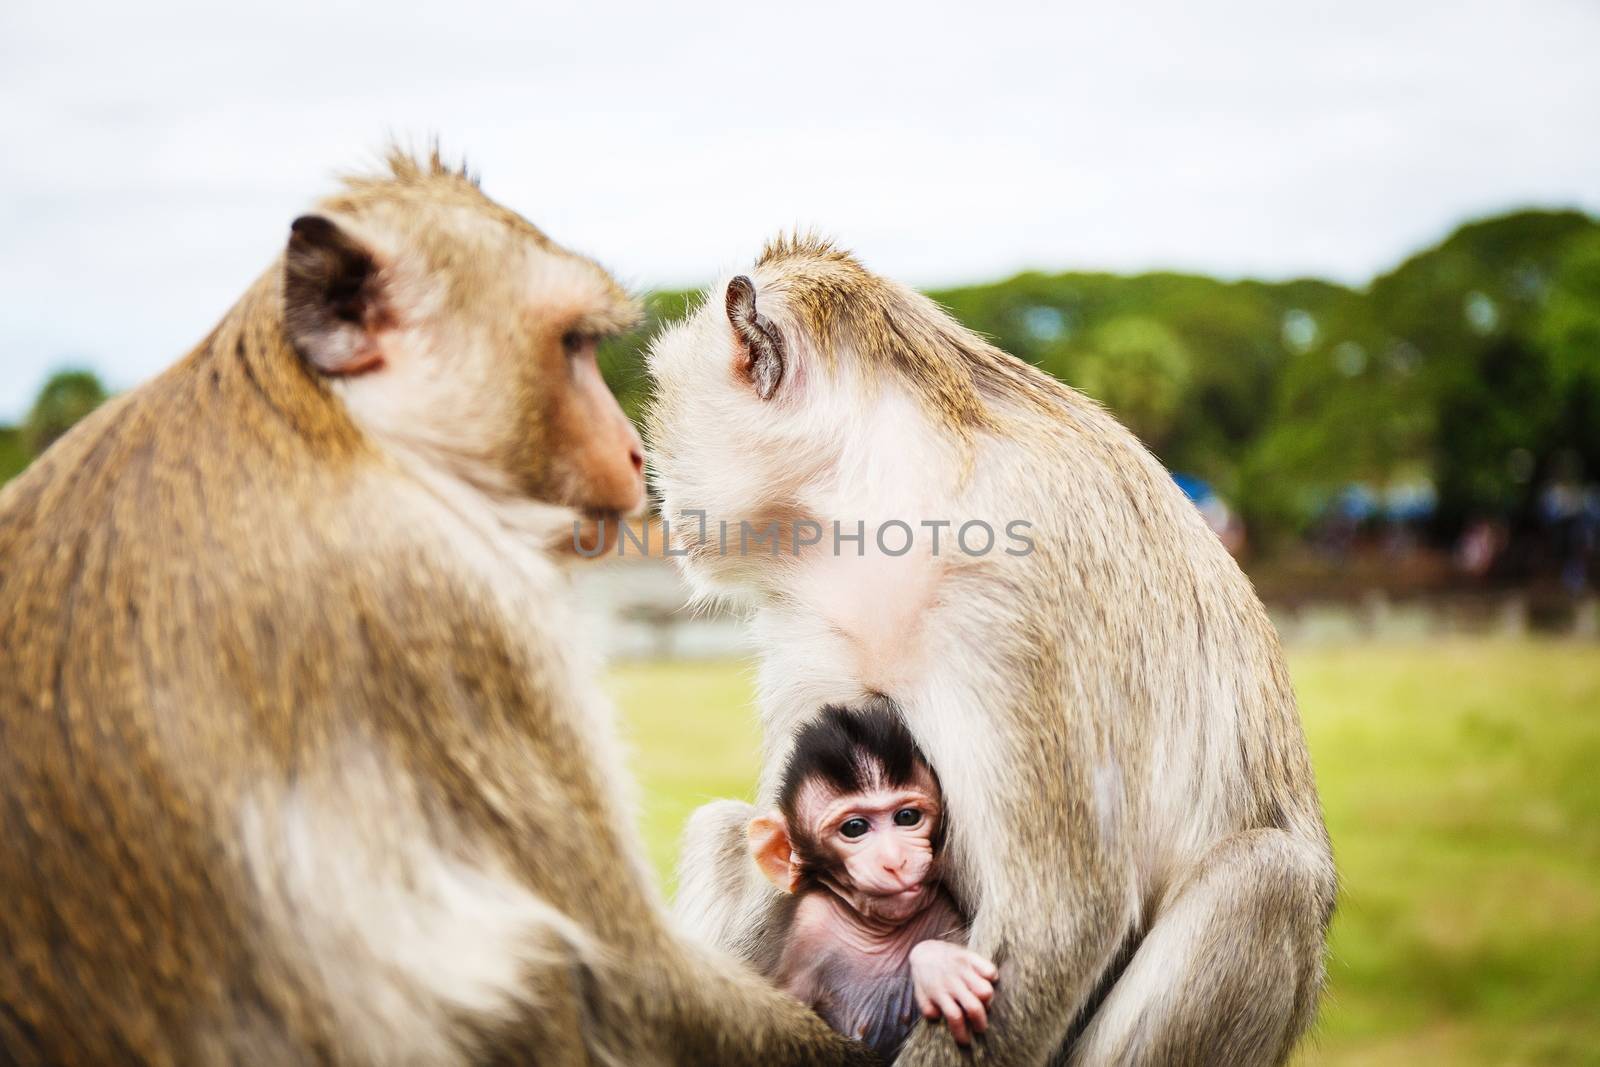 Family of monkeys by gorov108